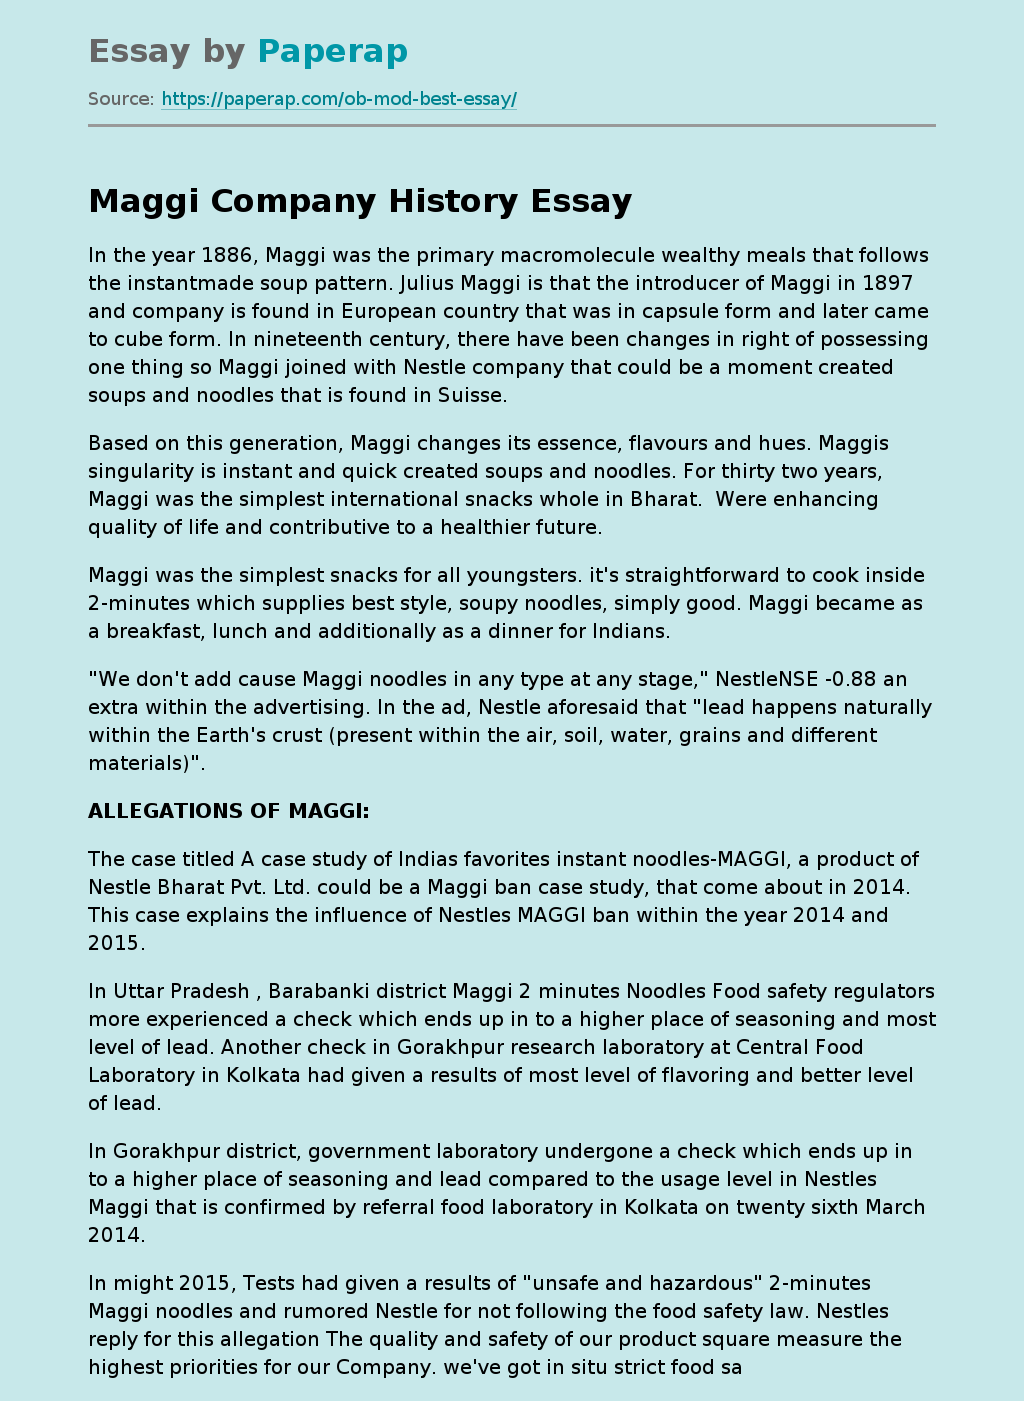 Maggi Company History